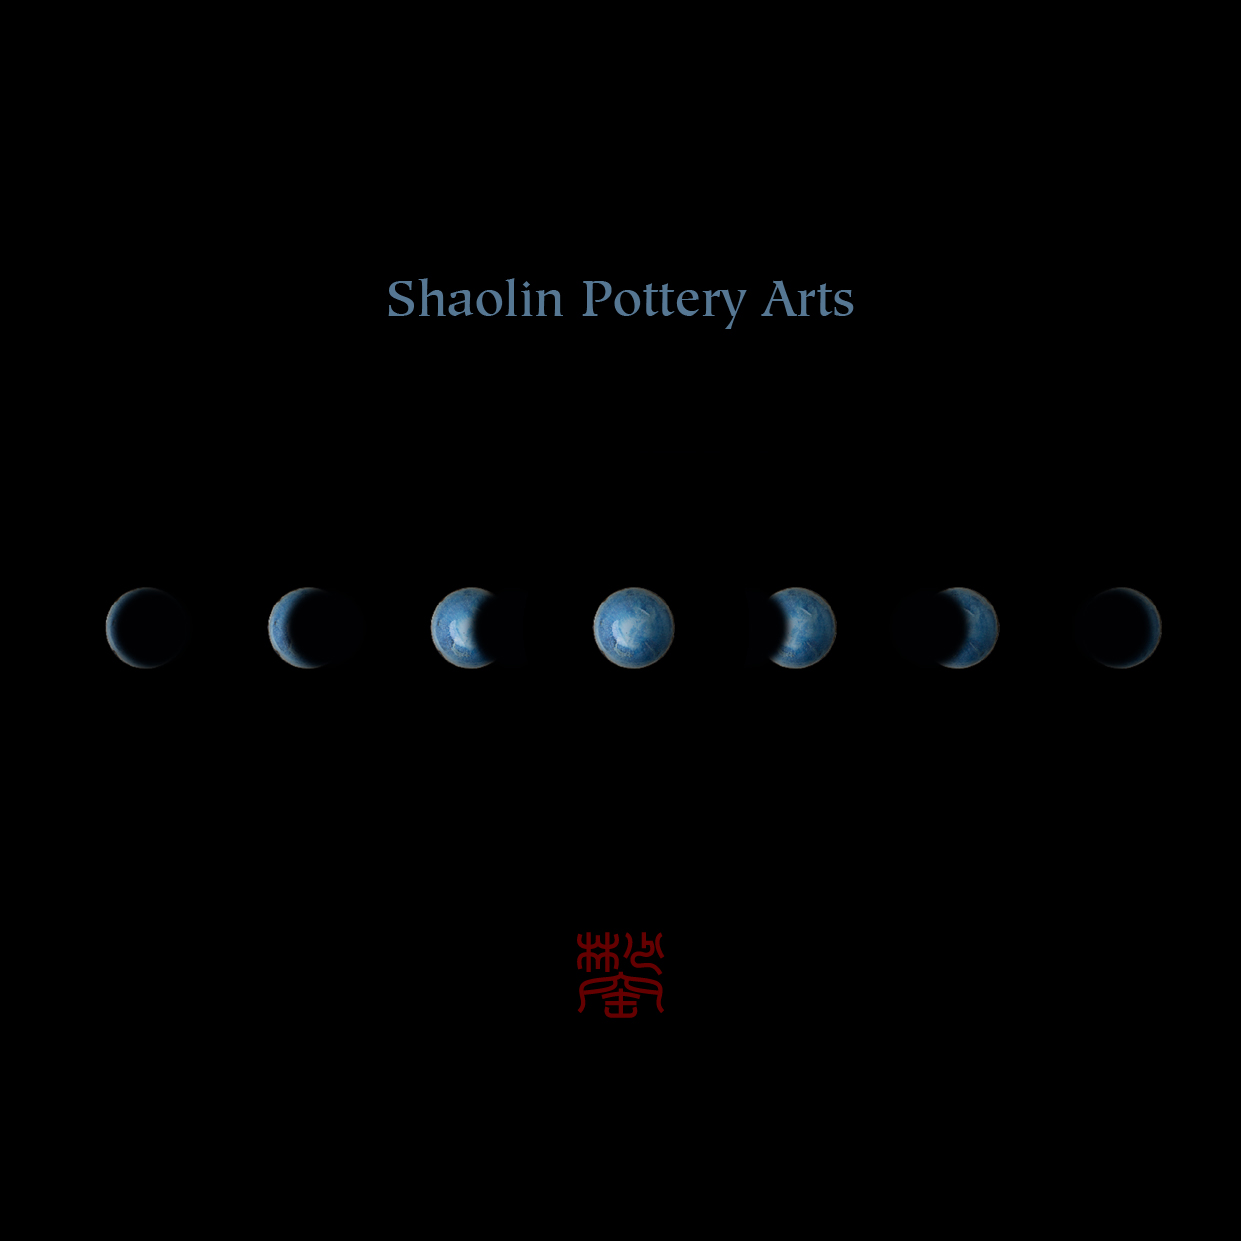 少林窑Shaolin Pottery Arts